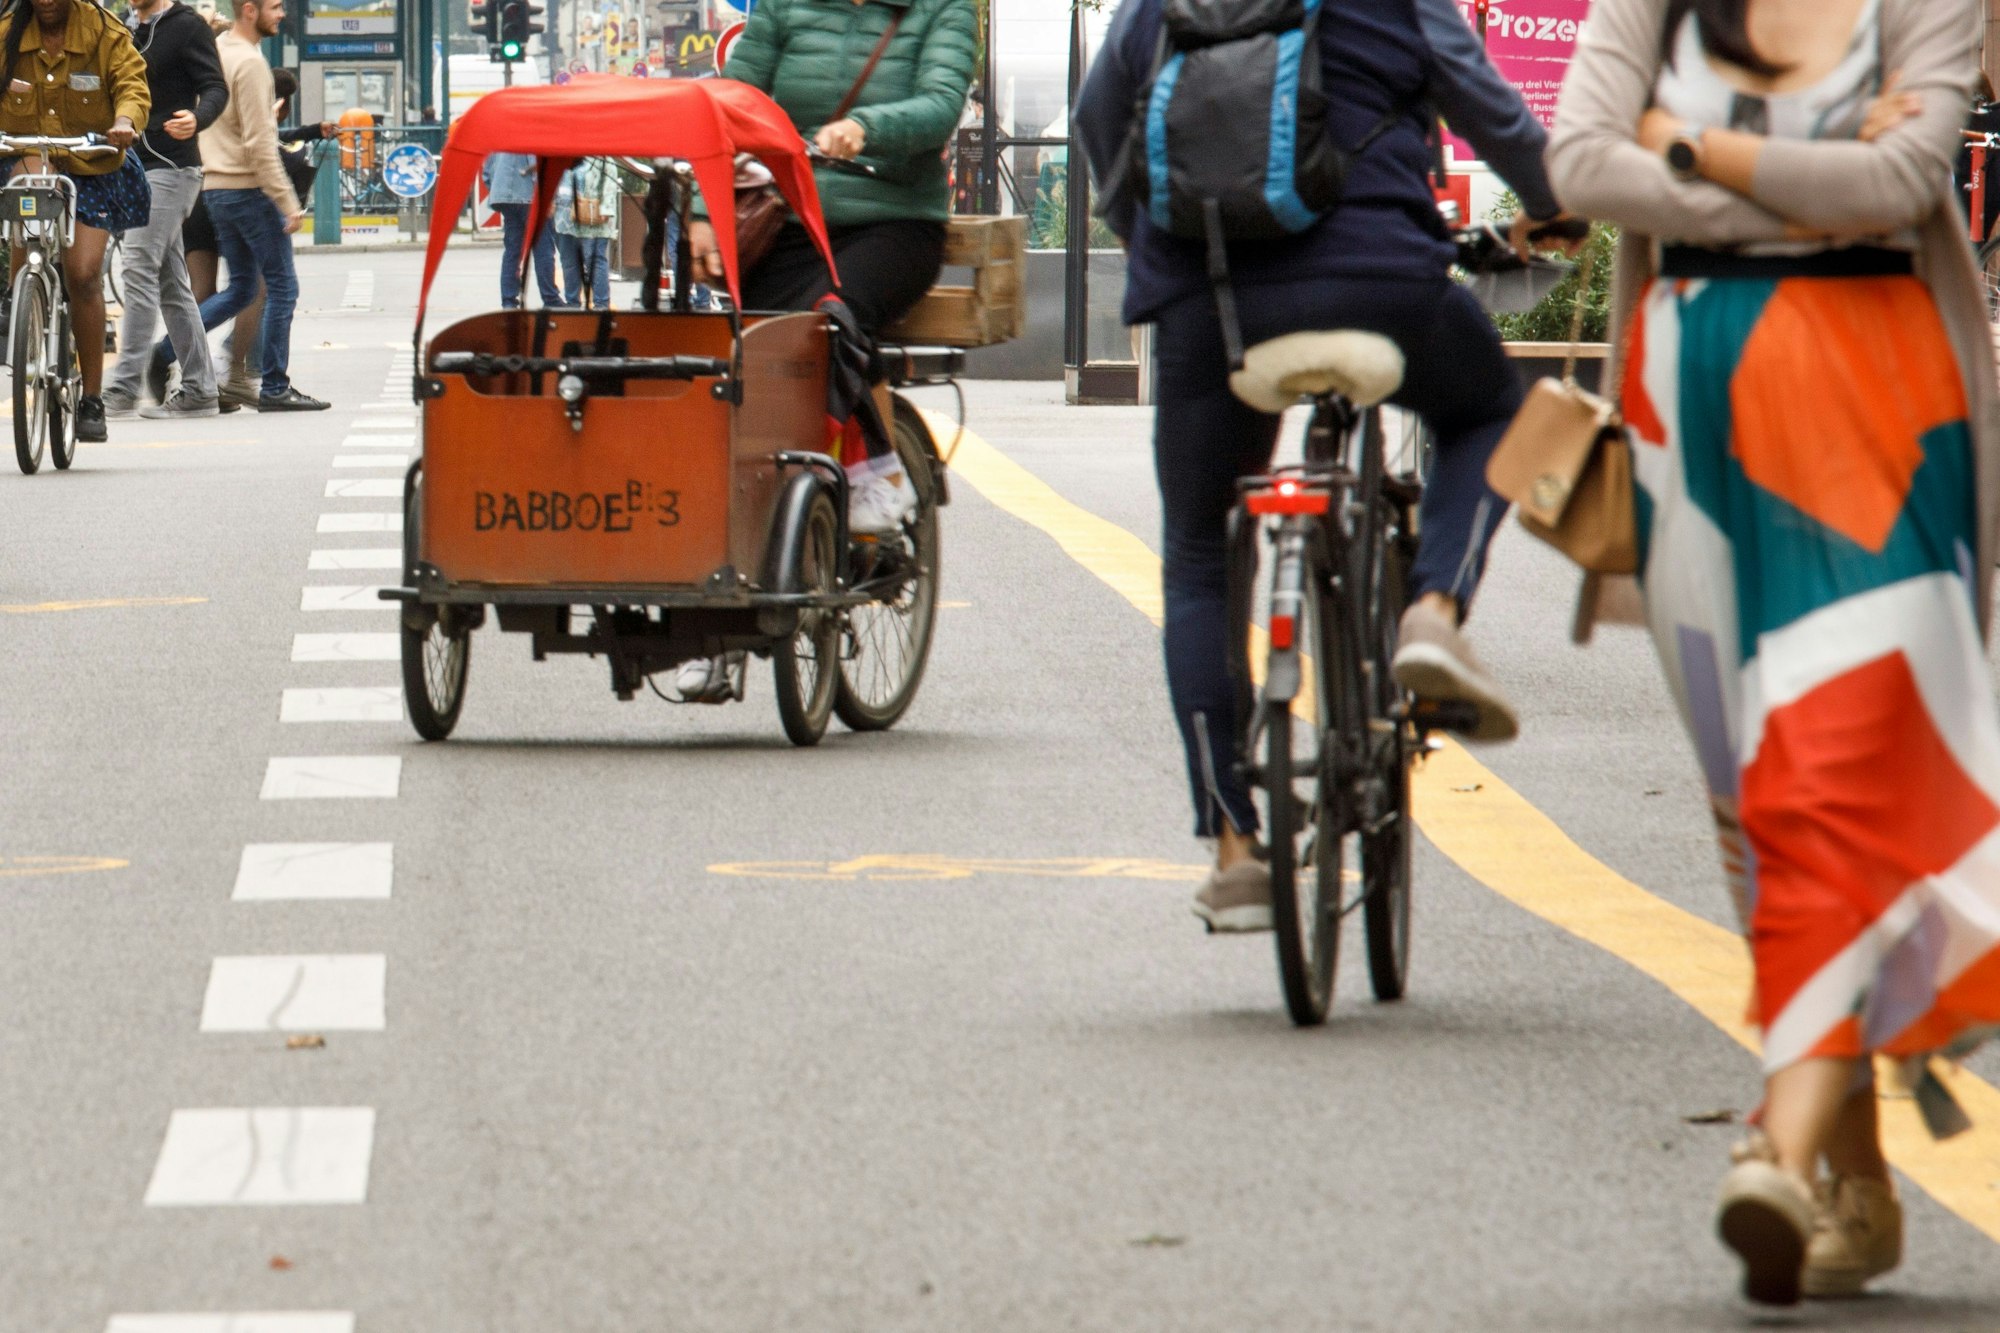 In Städten mittlerweile nicht mehr wegzudenken: Viele Familien setzen auf Lastenräder, Babboe ist eine der führenden Marken.